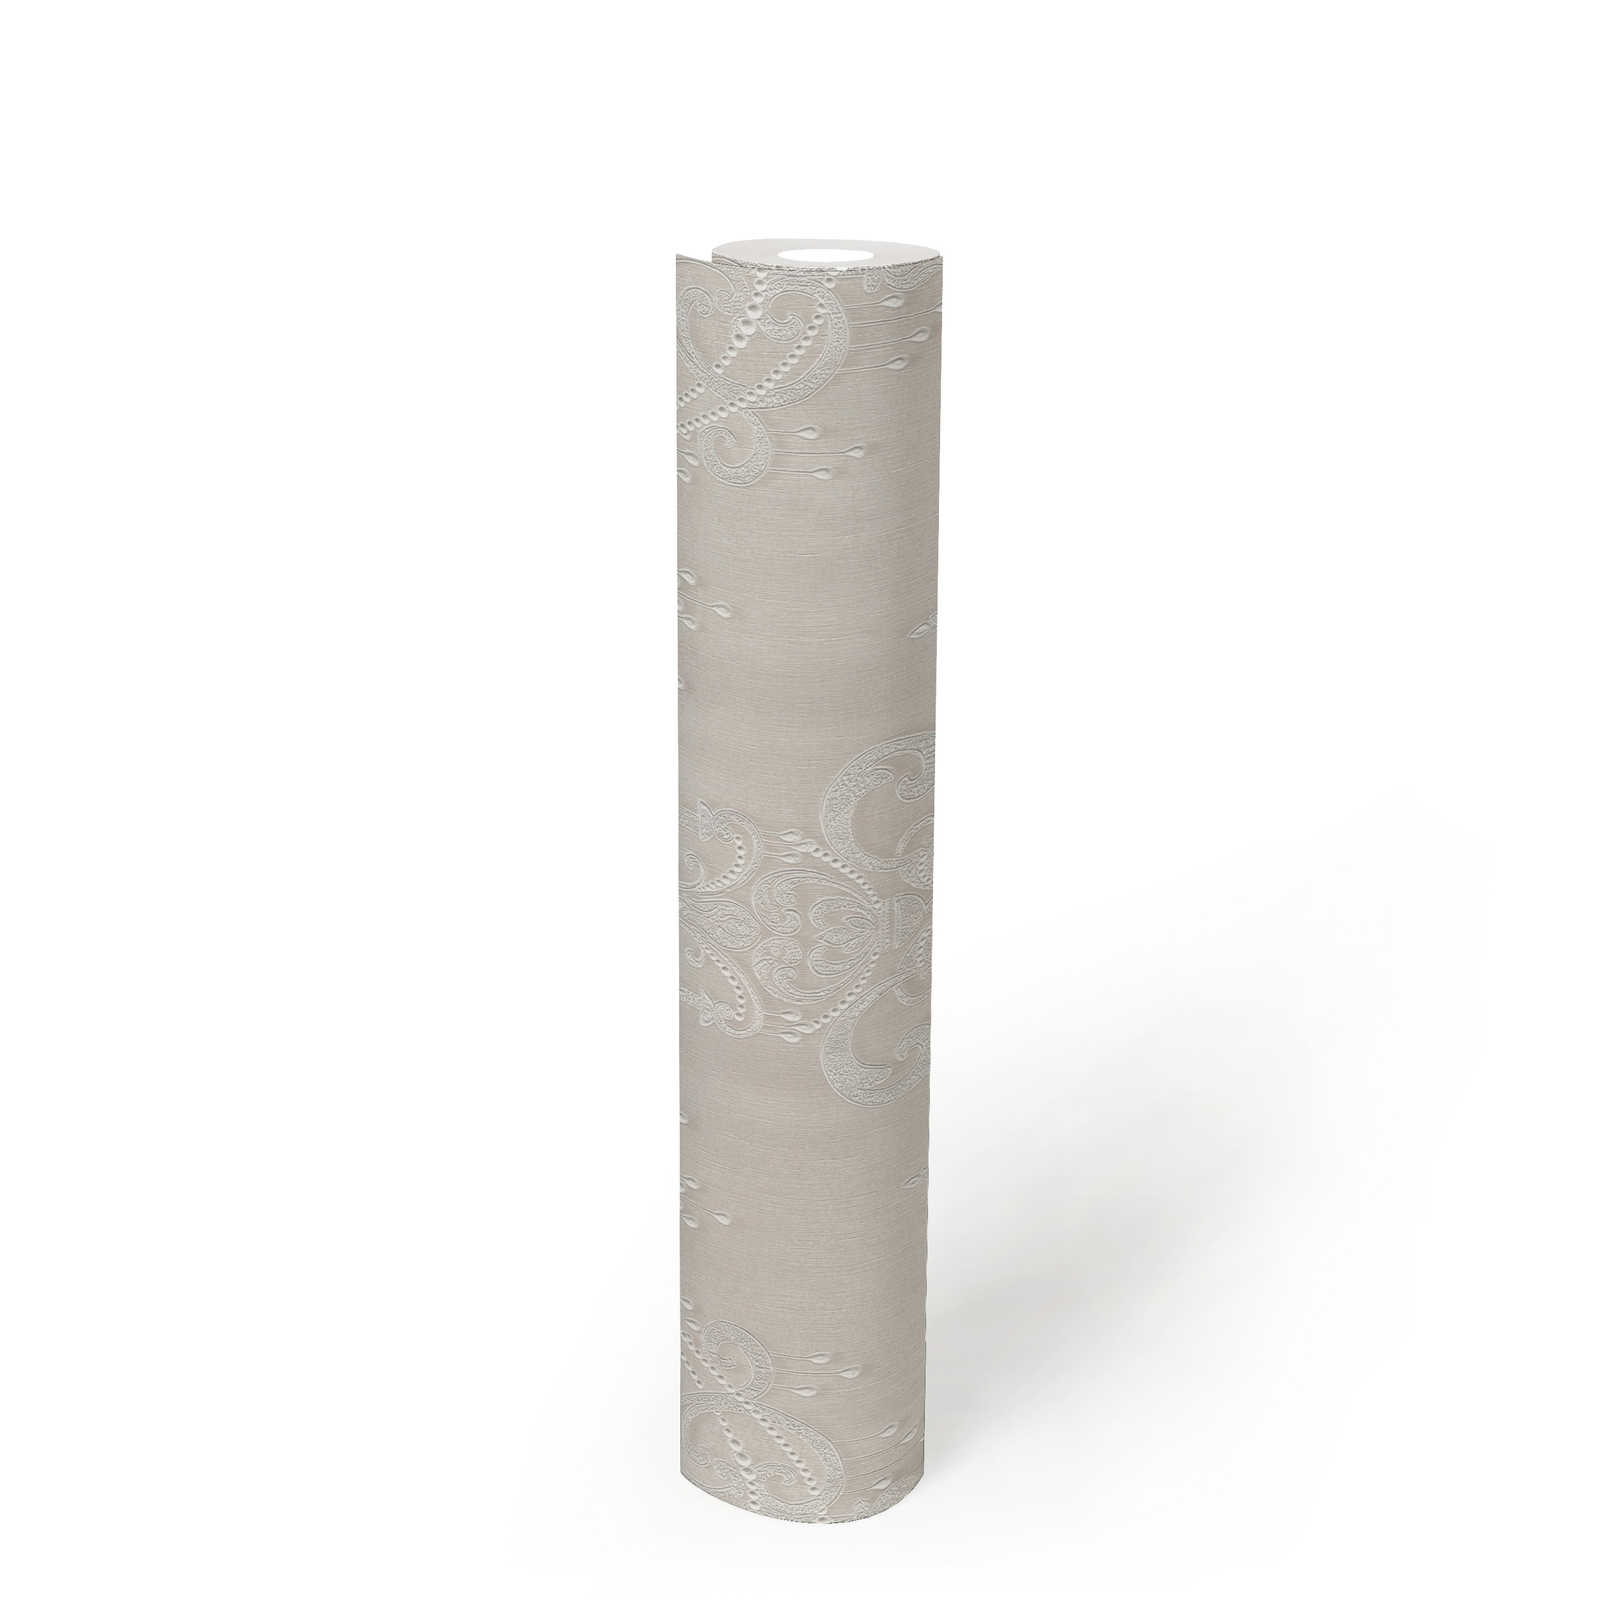             Ornement papier peint Champagne avec motif de perles - crème
        